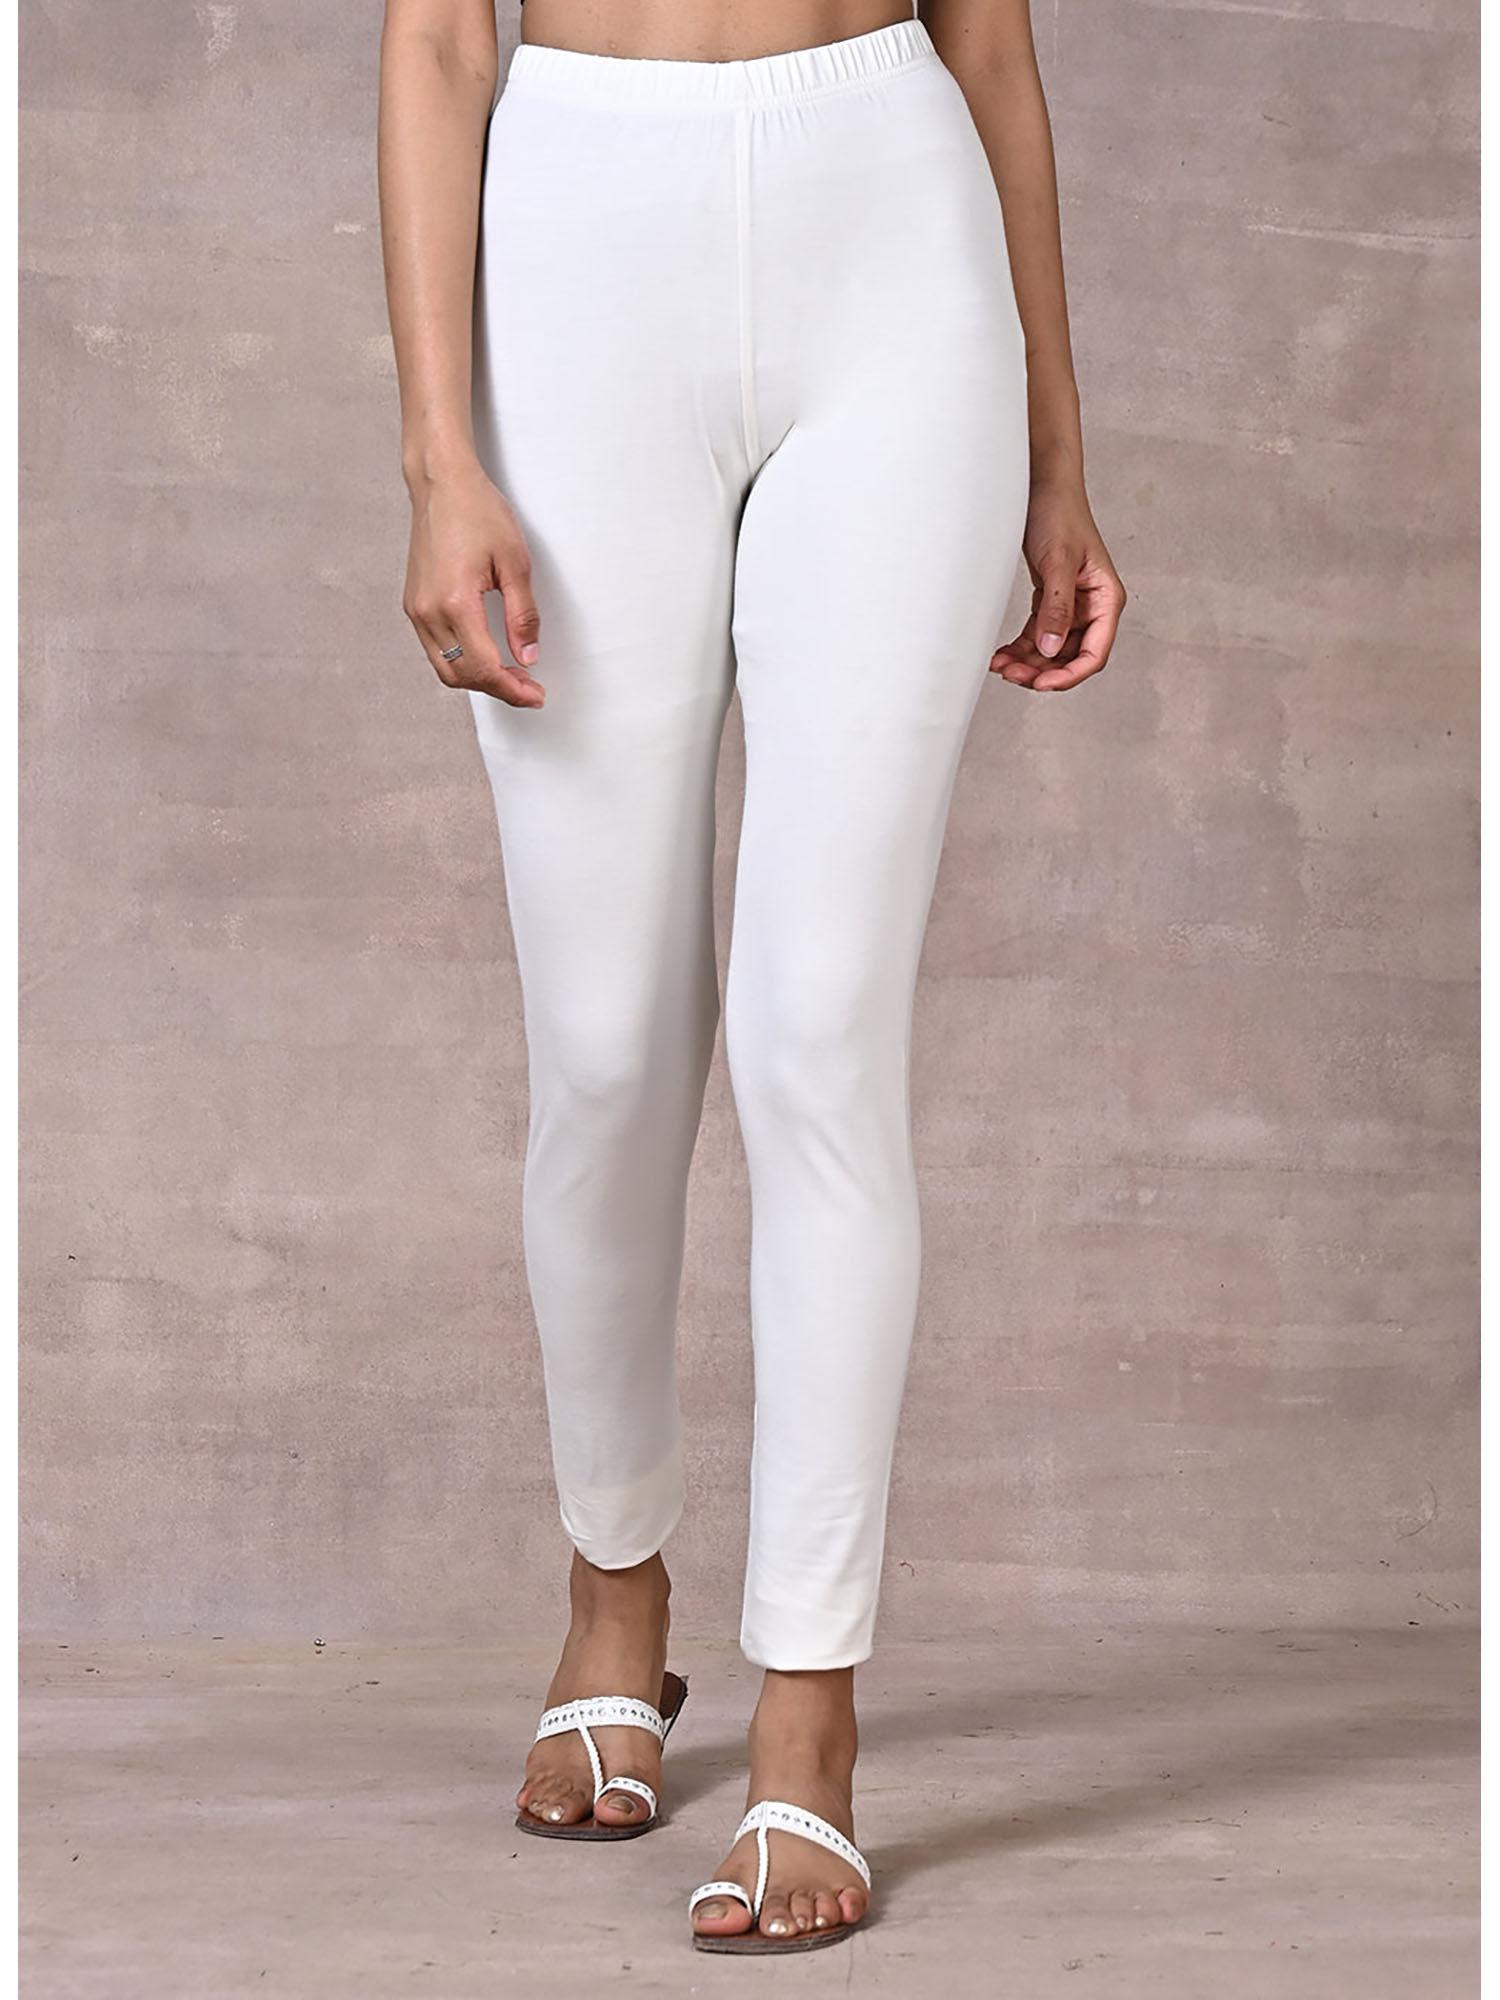 white plain tights